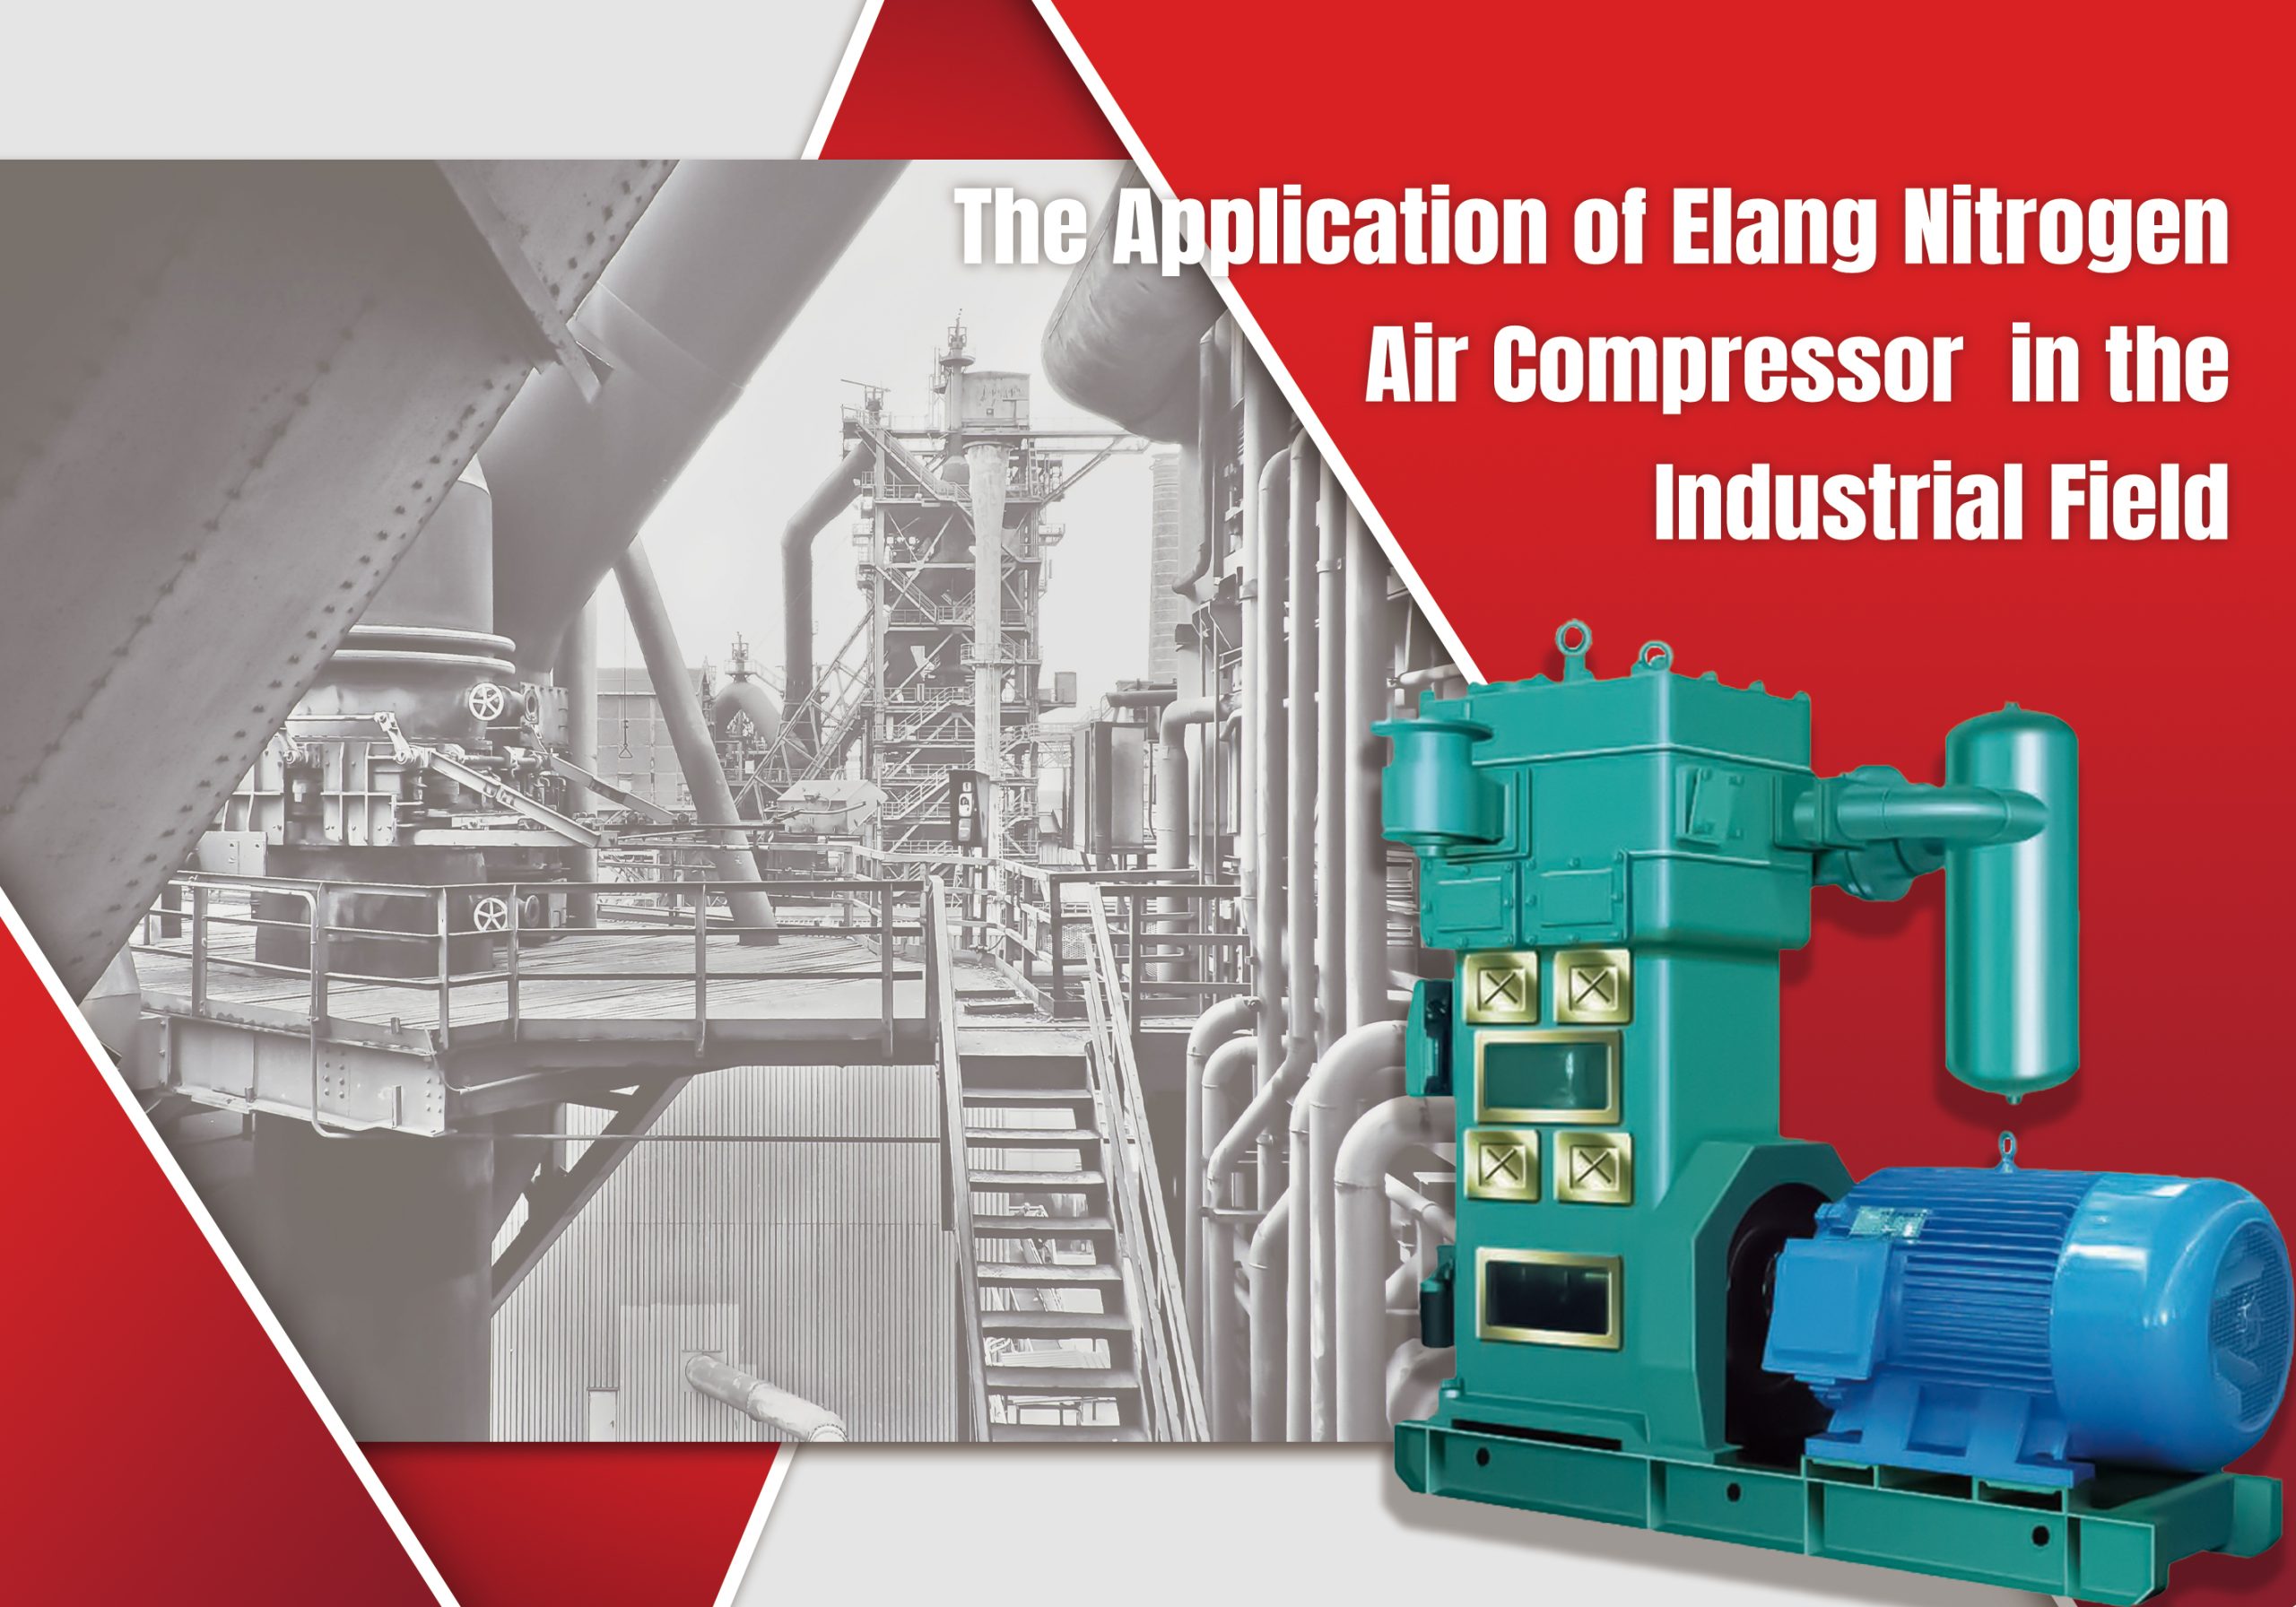 The Industrial Application of Elang Nitrogen Air Compressor